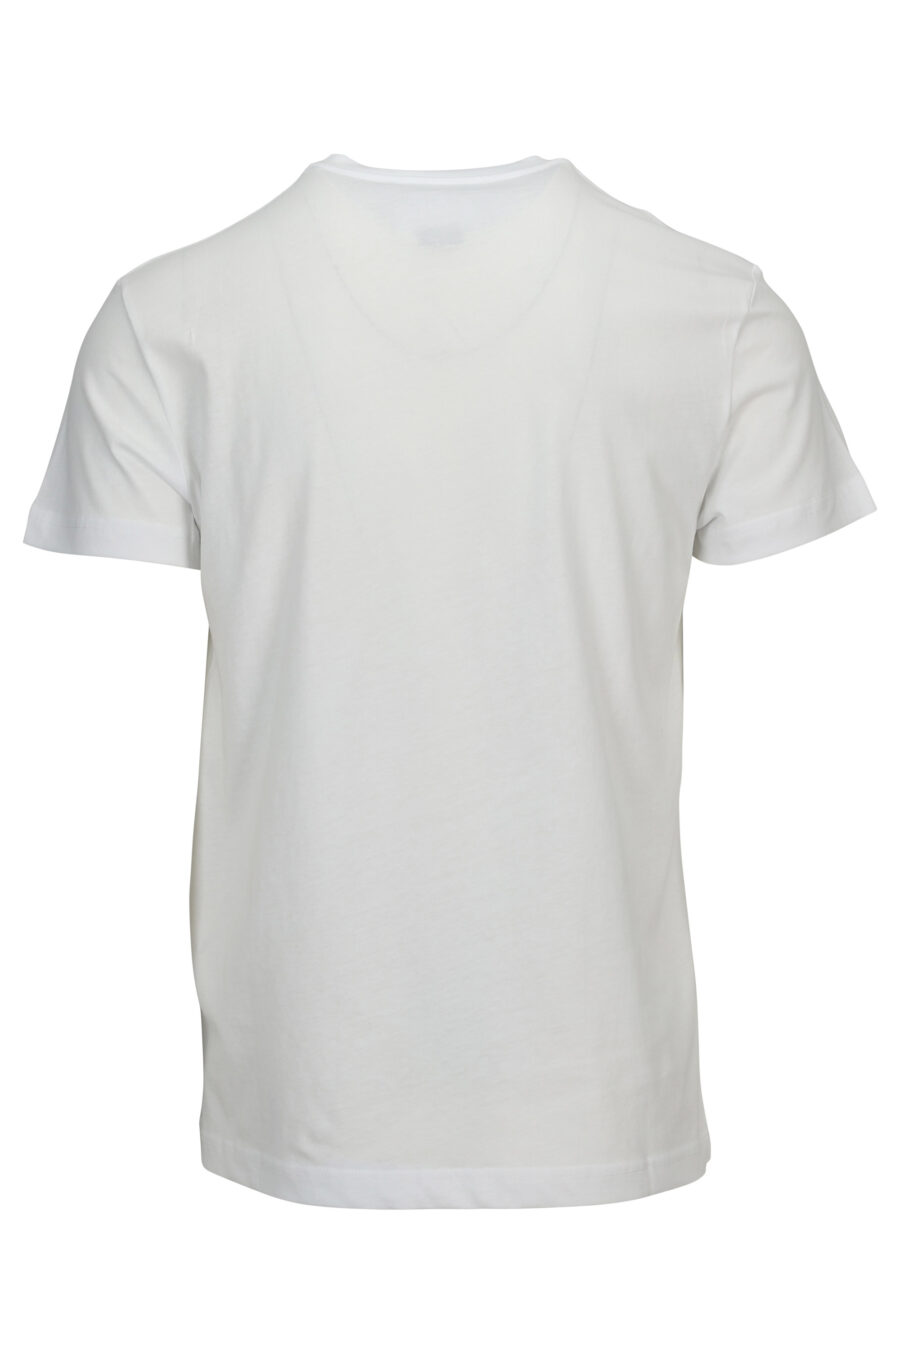 Camiseta blanca con maxilogo barroco acuarela - 8052019589405 1